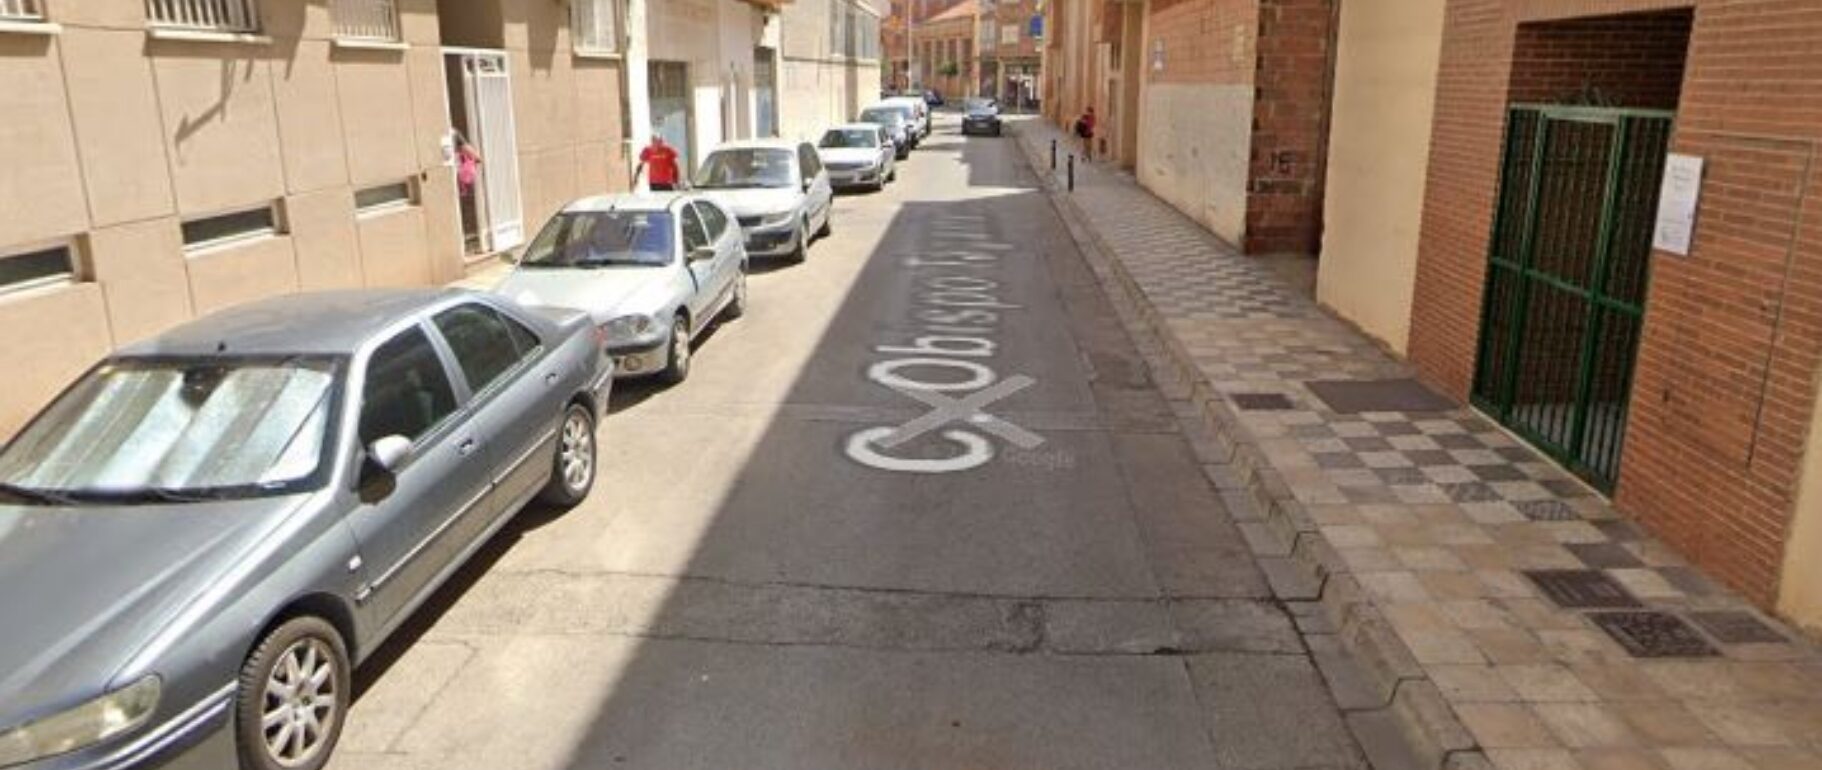 Calle Obispo Tagaste, donde ha tenido lugar el suceso en Albacete. Imagen de Google Maps.